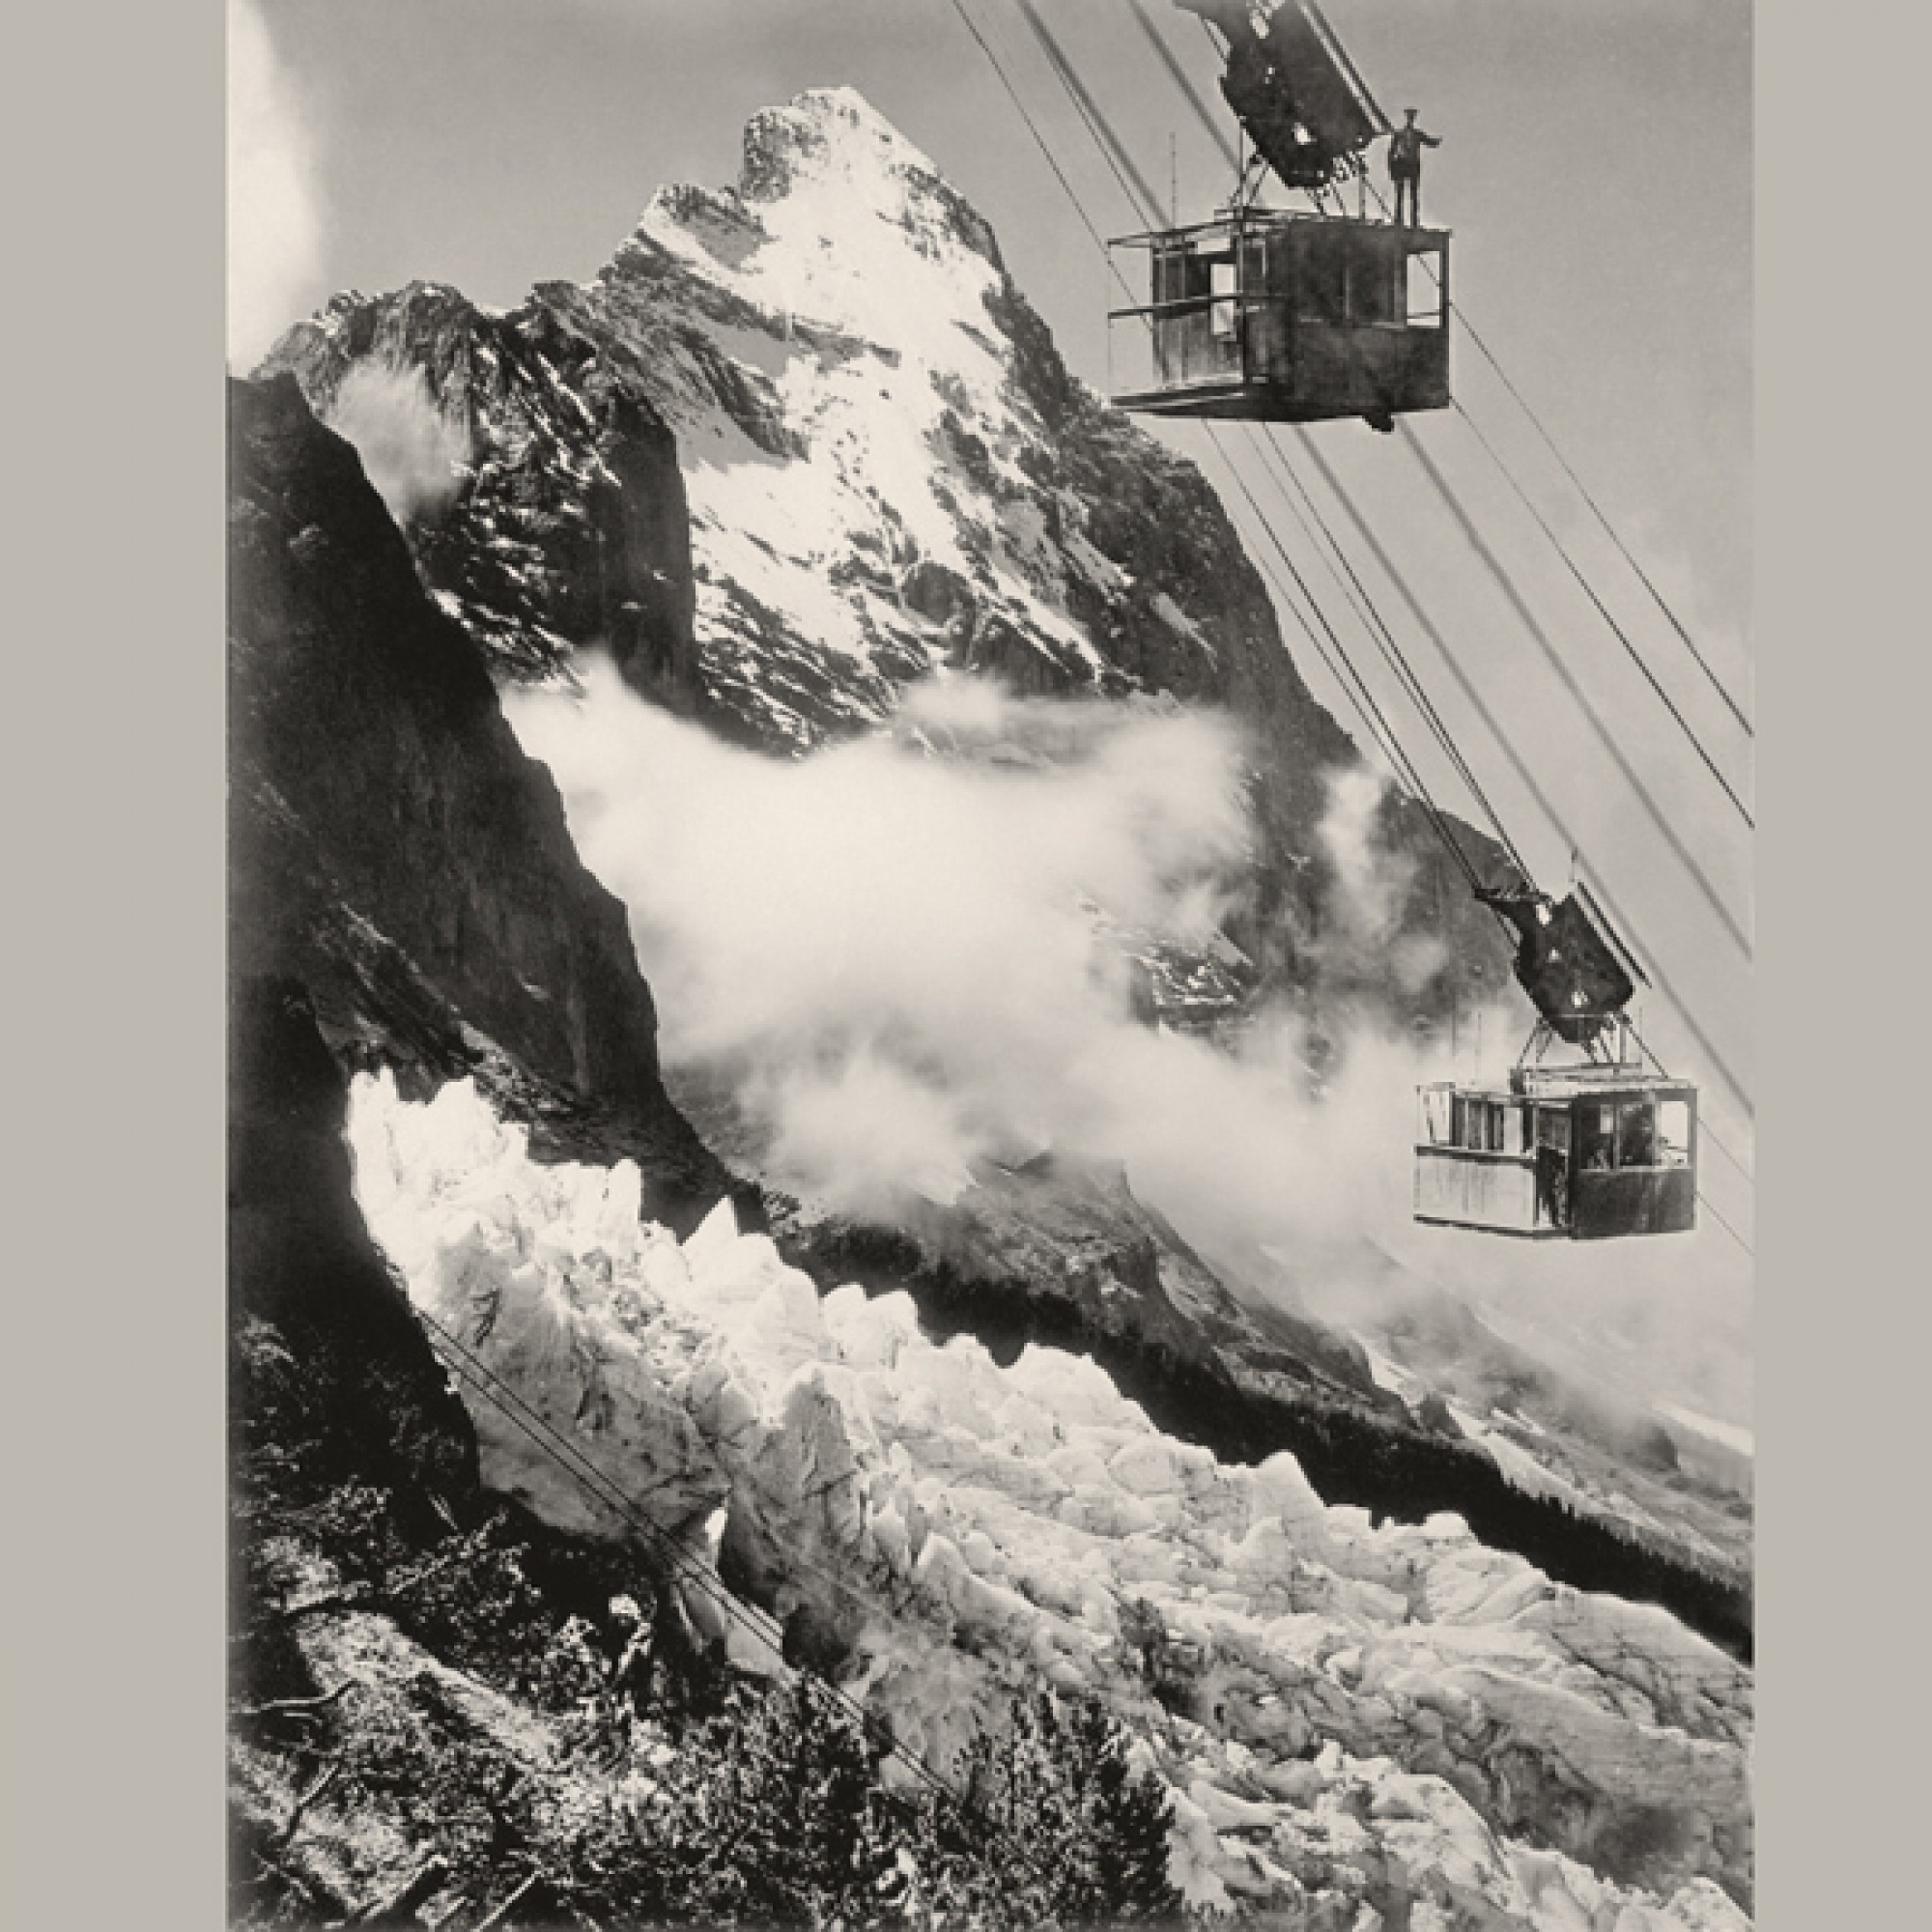 Die touristische Erschliessung auf die Spitze getrieben. Geplant war eine Bahn auf den 3700 Meter hohen Gipfel, doch vom Wetterhorn-Aufzug wurde nur die unterste Sektion gebaut.